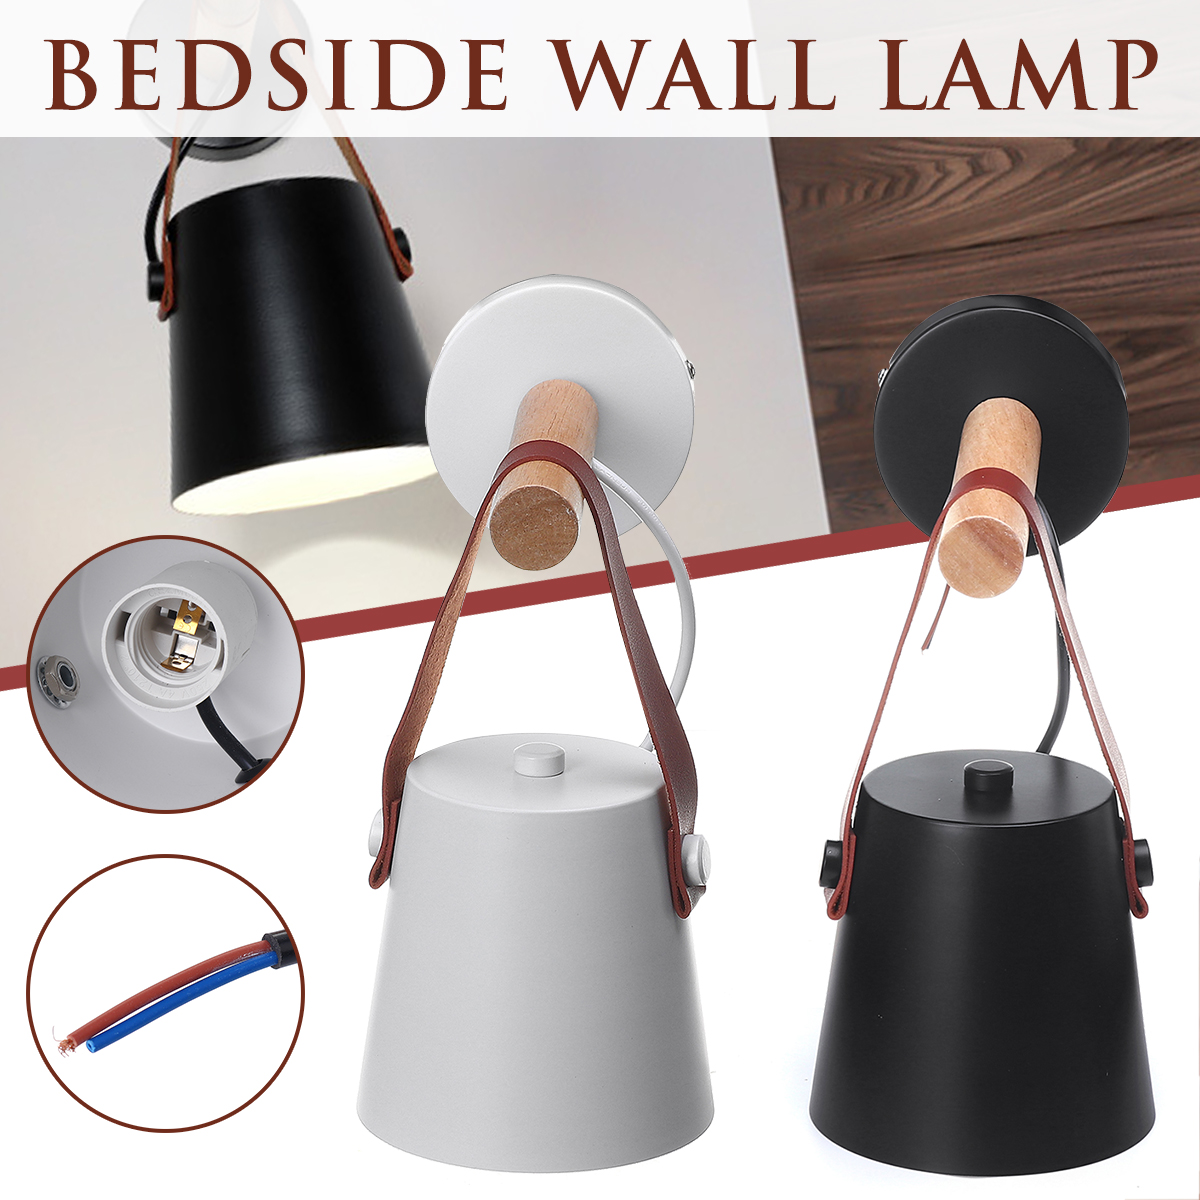 Wall-mounted-Lamp-Bedside-Hanging-Wood-Lights-Living-Room-Bedroom-Decor-220V-1689915-1